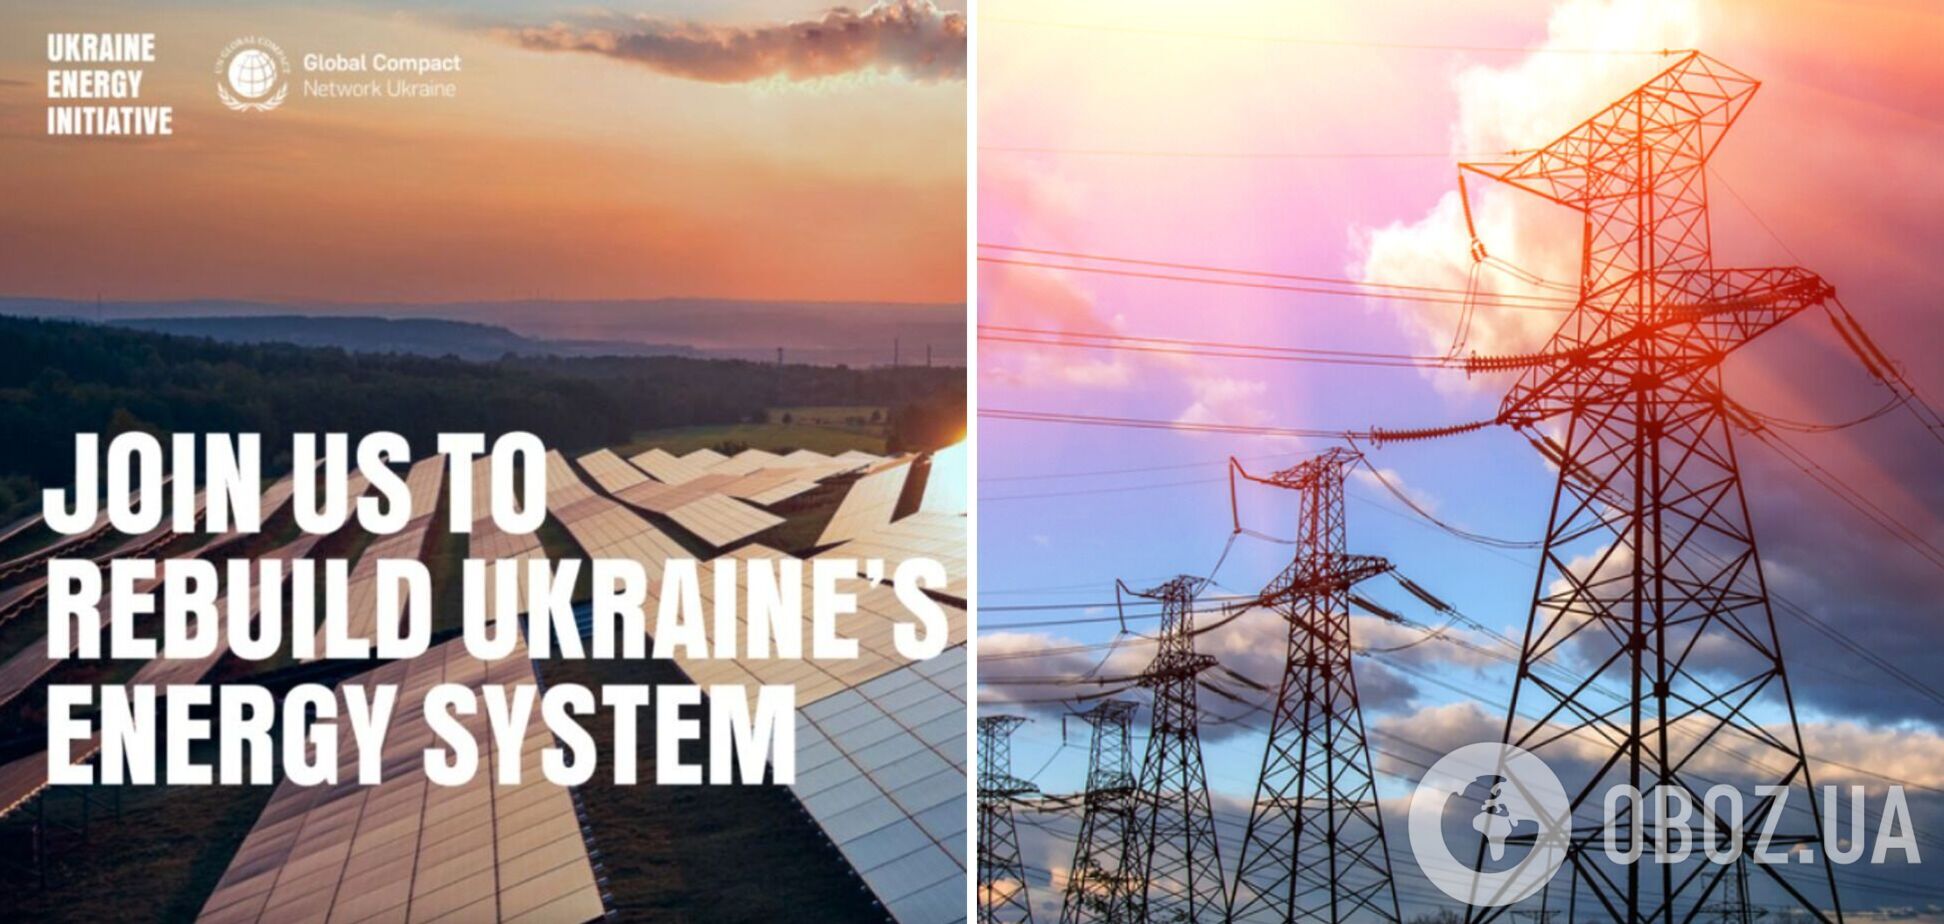 Сеть Глобального договора ООН запускает Энергетическую инициативу Украины для скорейшего возобновления энергетики